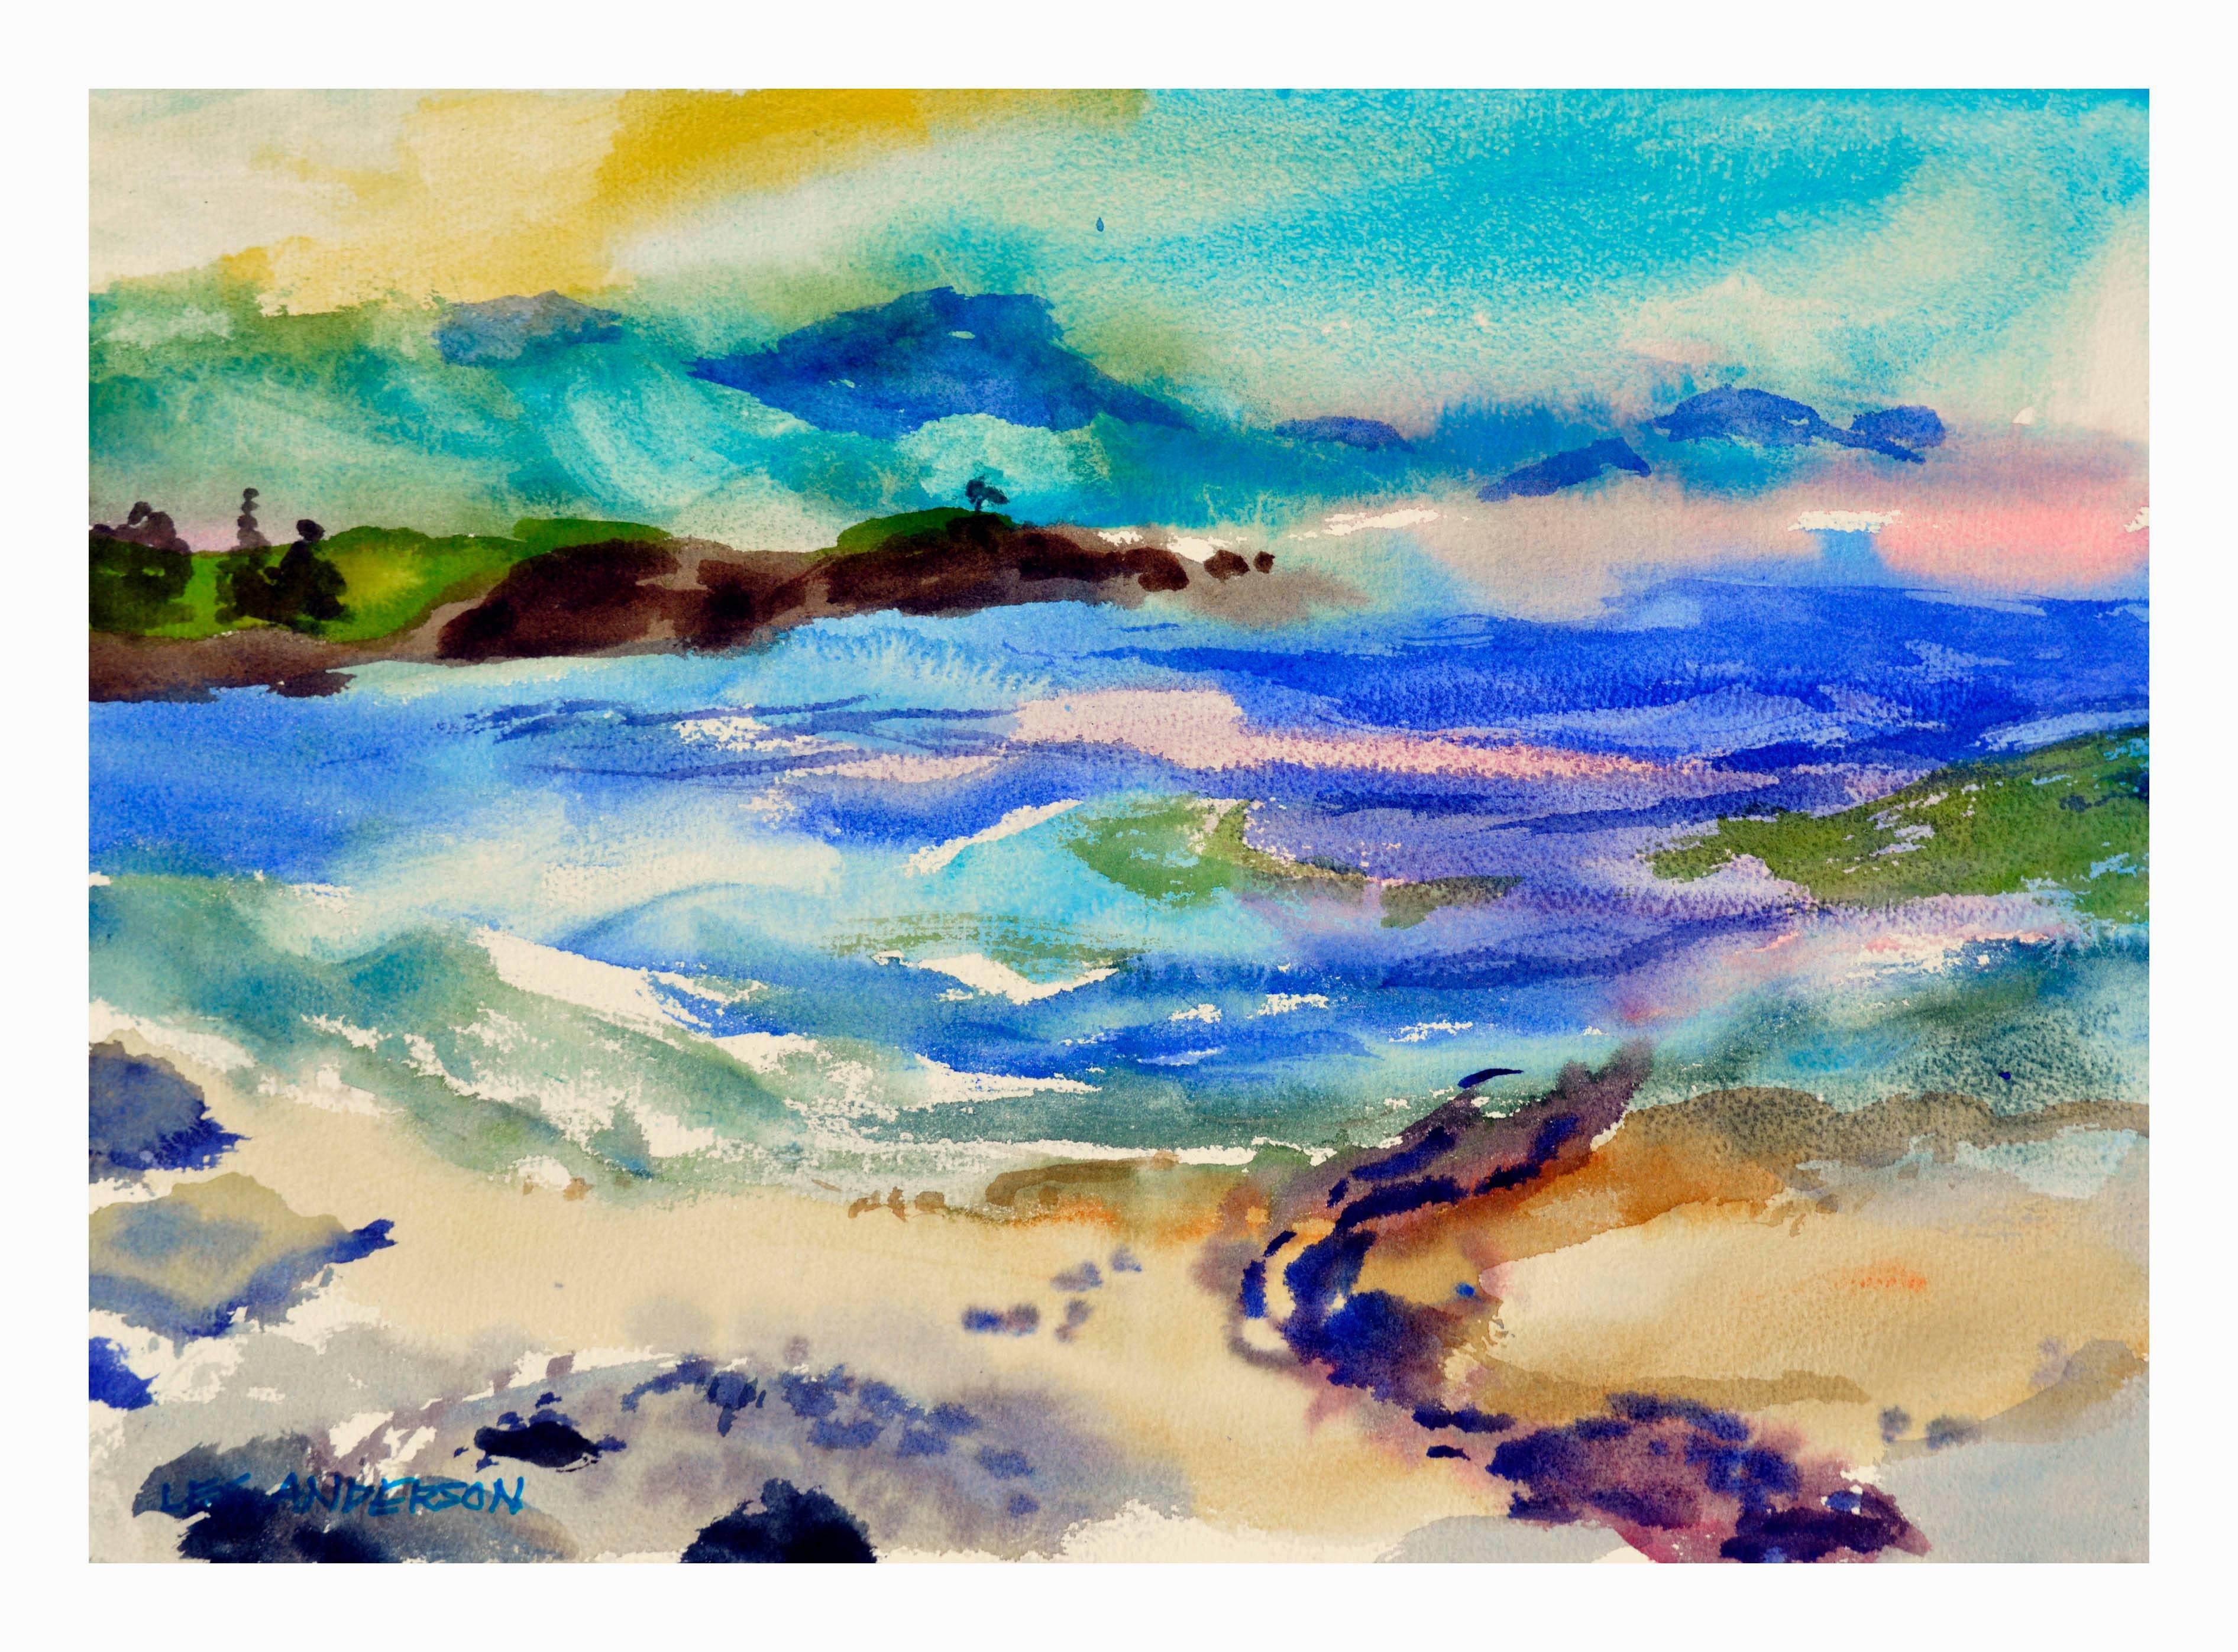 Les Anderson Landscape Painting - Big Sur Pastel Seascape